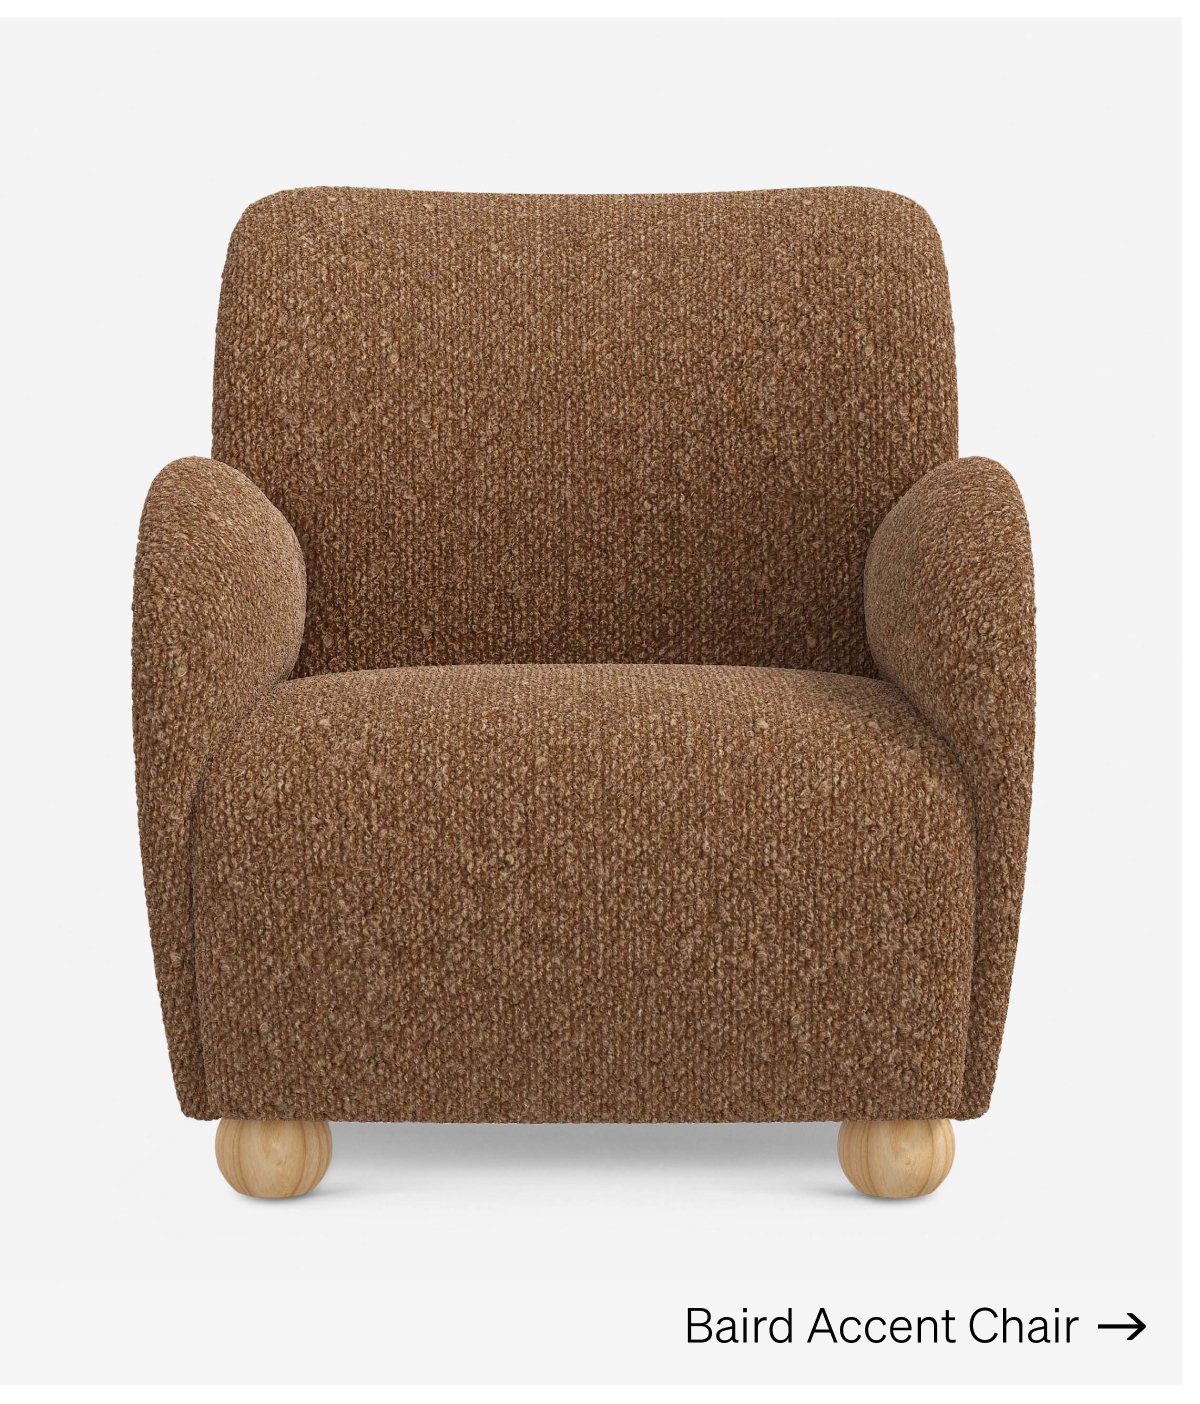 Shop Baird Accent Chair